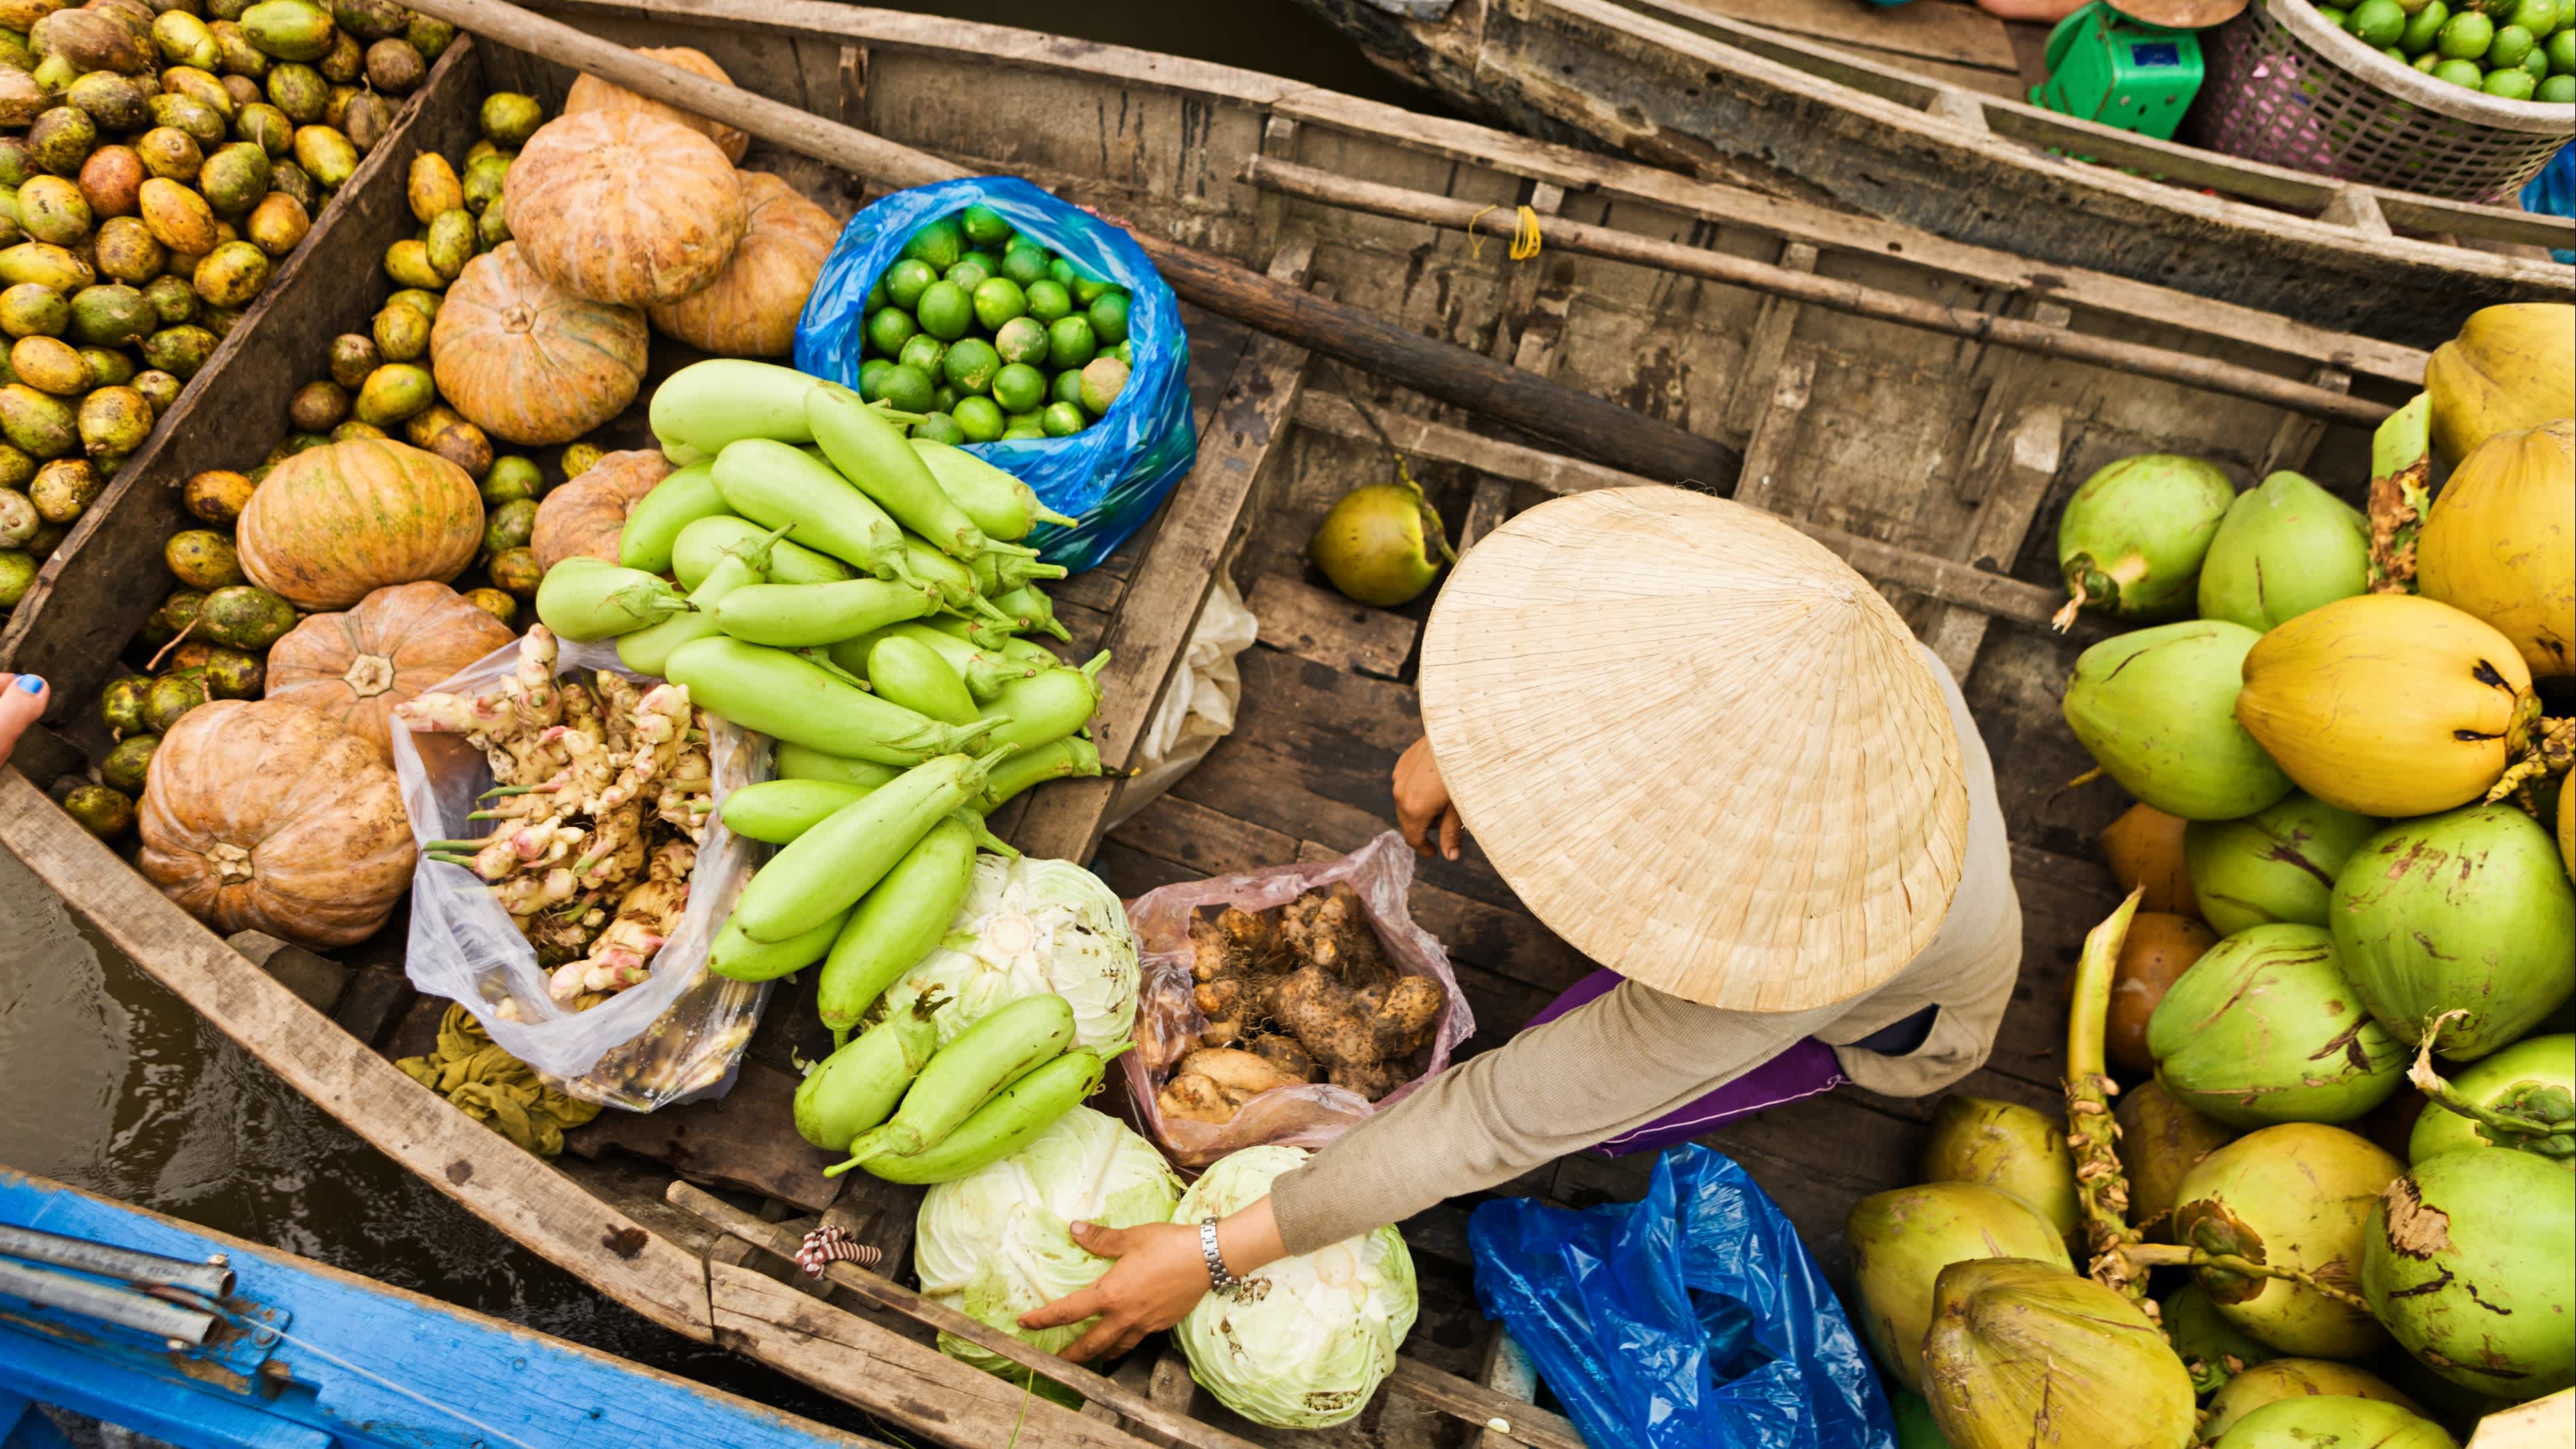 Handelaar op boot met fruit en groenten in de Mekong Delta in Vietnam.